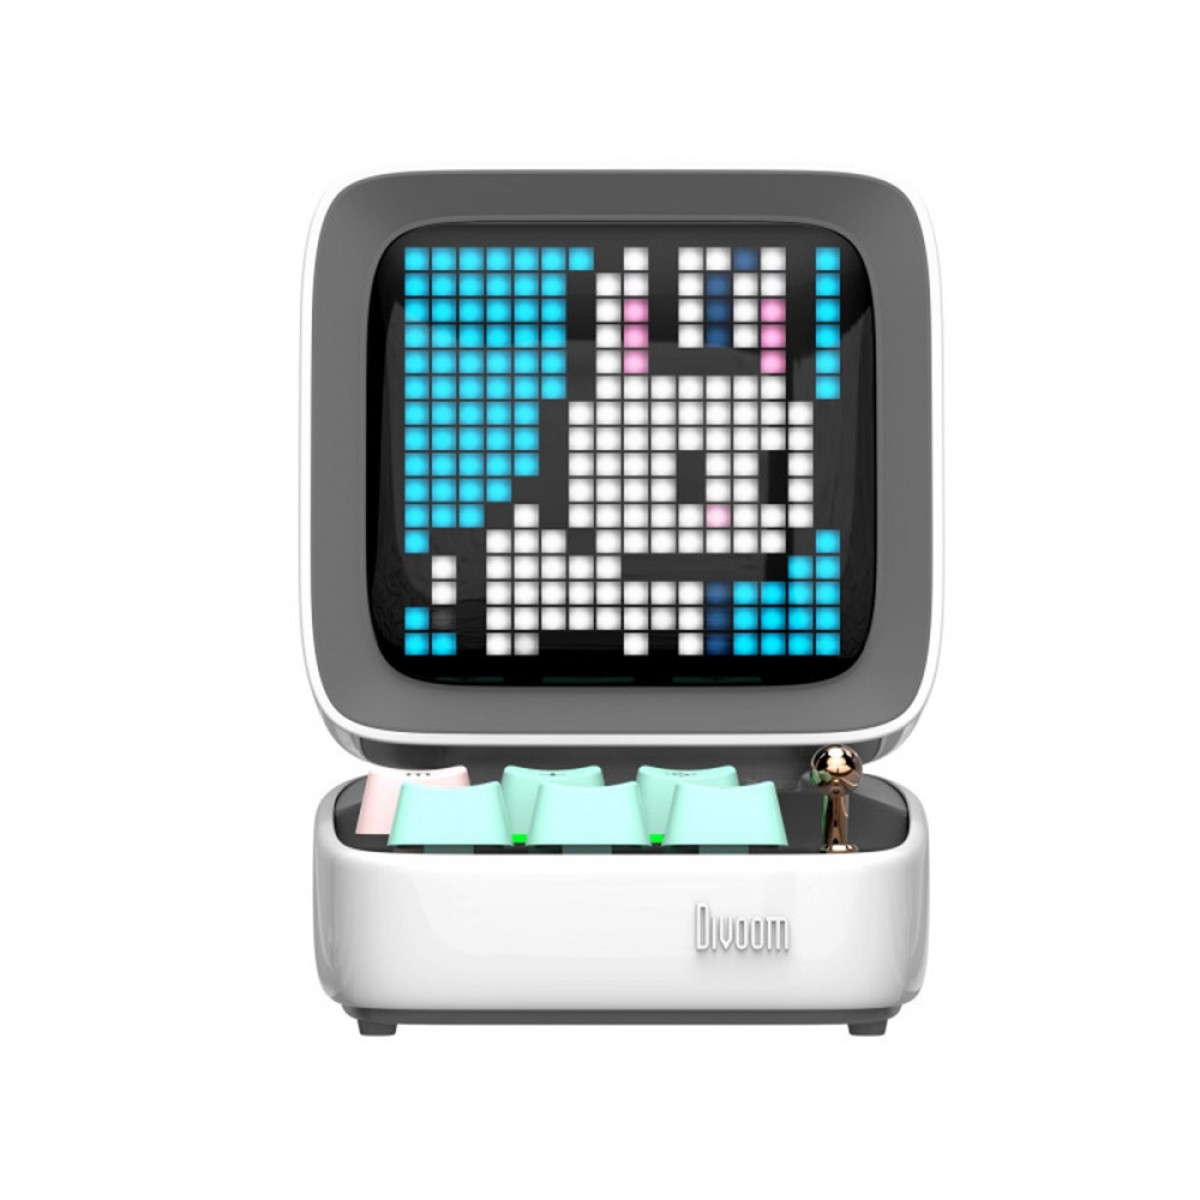 Caixa de Som Divoom Ditoo Pro, Pixel Art, Game Retro, Bluetooth, White, 90100058209